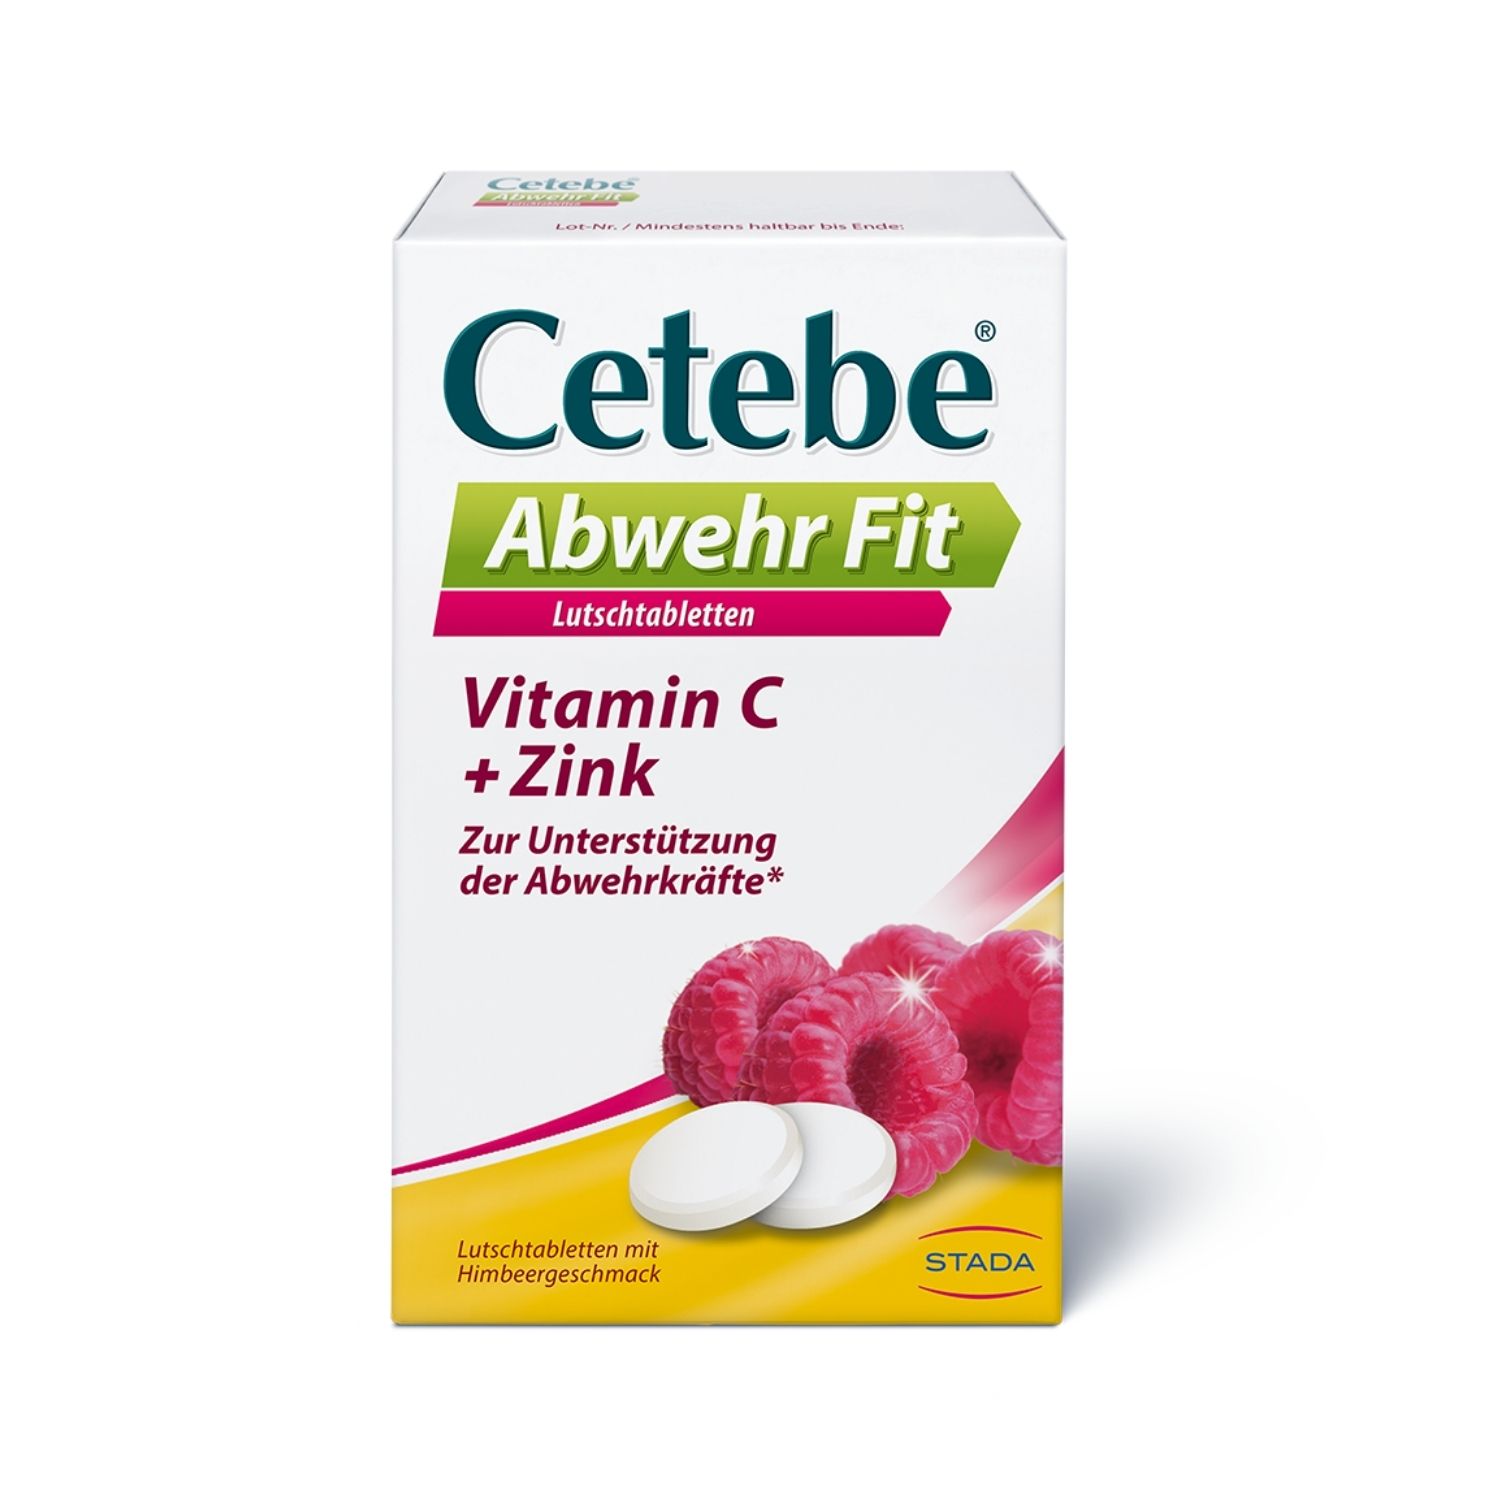 Cetebe® Abwehr Fit Nahrungsergänzungsmittel mit Ascorbinsäure (Vitamin C) und Zink